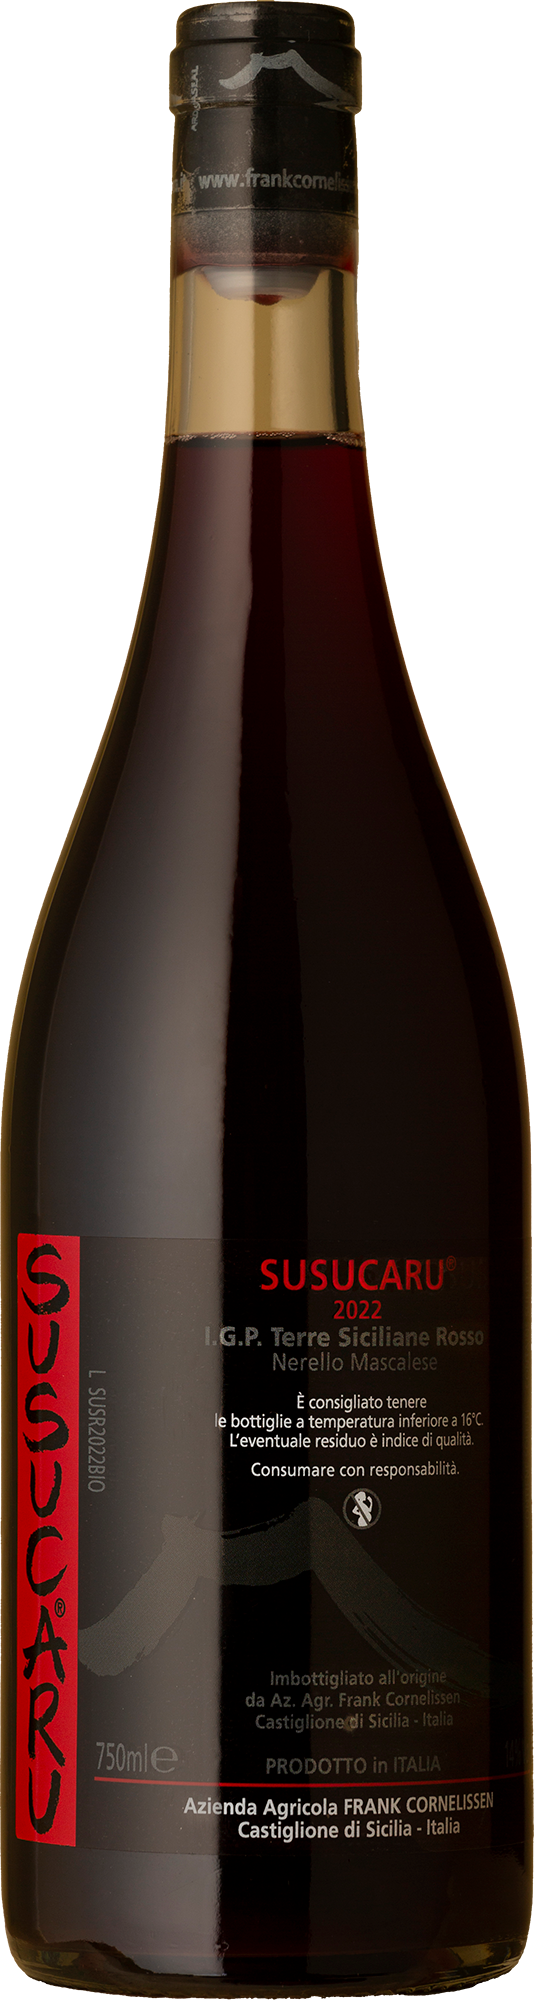 Frank Cornelissen - Susucaru Etna Rosso Nerello Mascalese Blend 2022 Red Wine